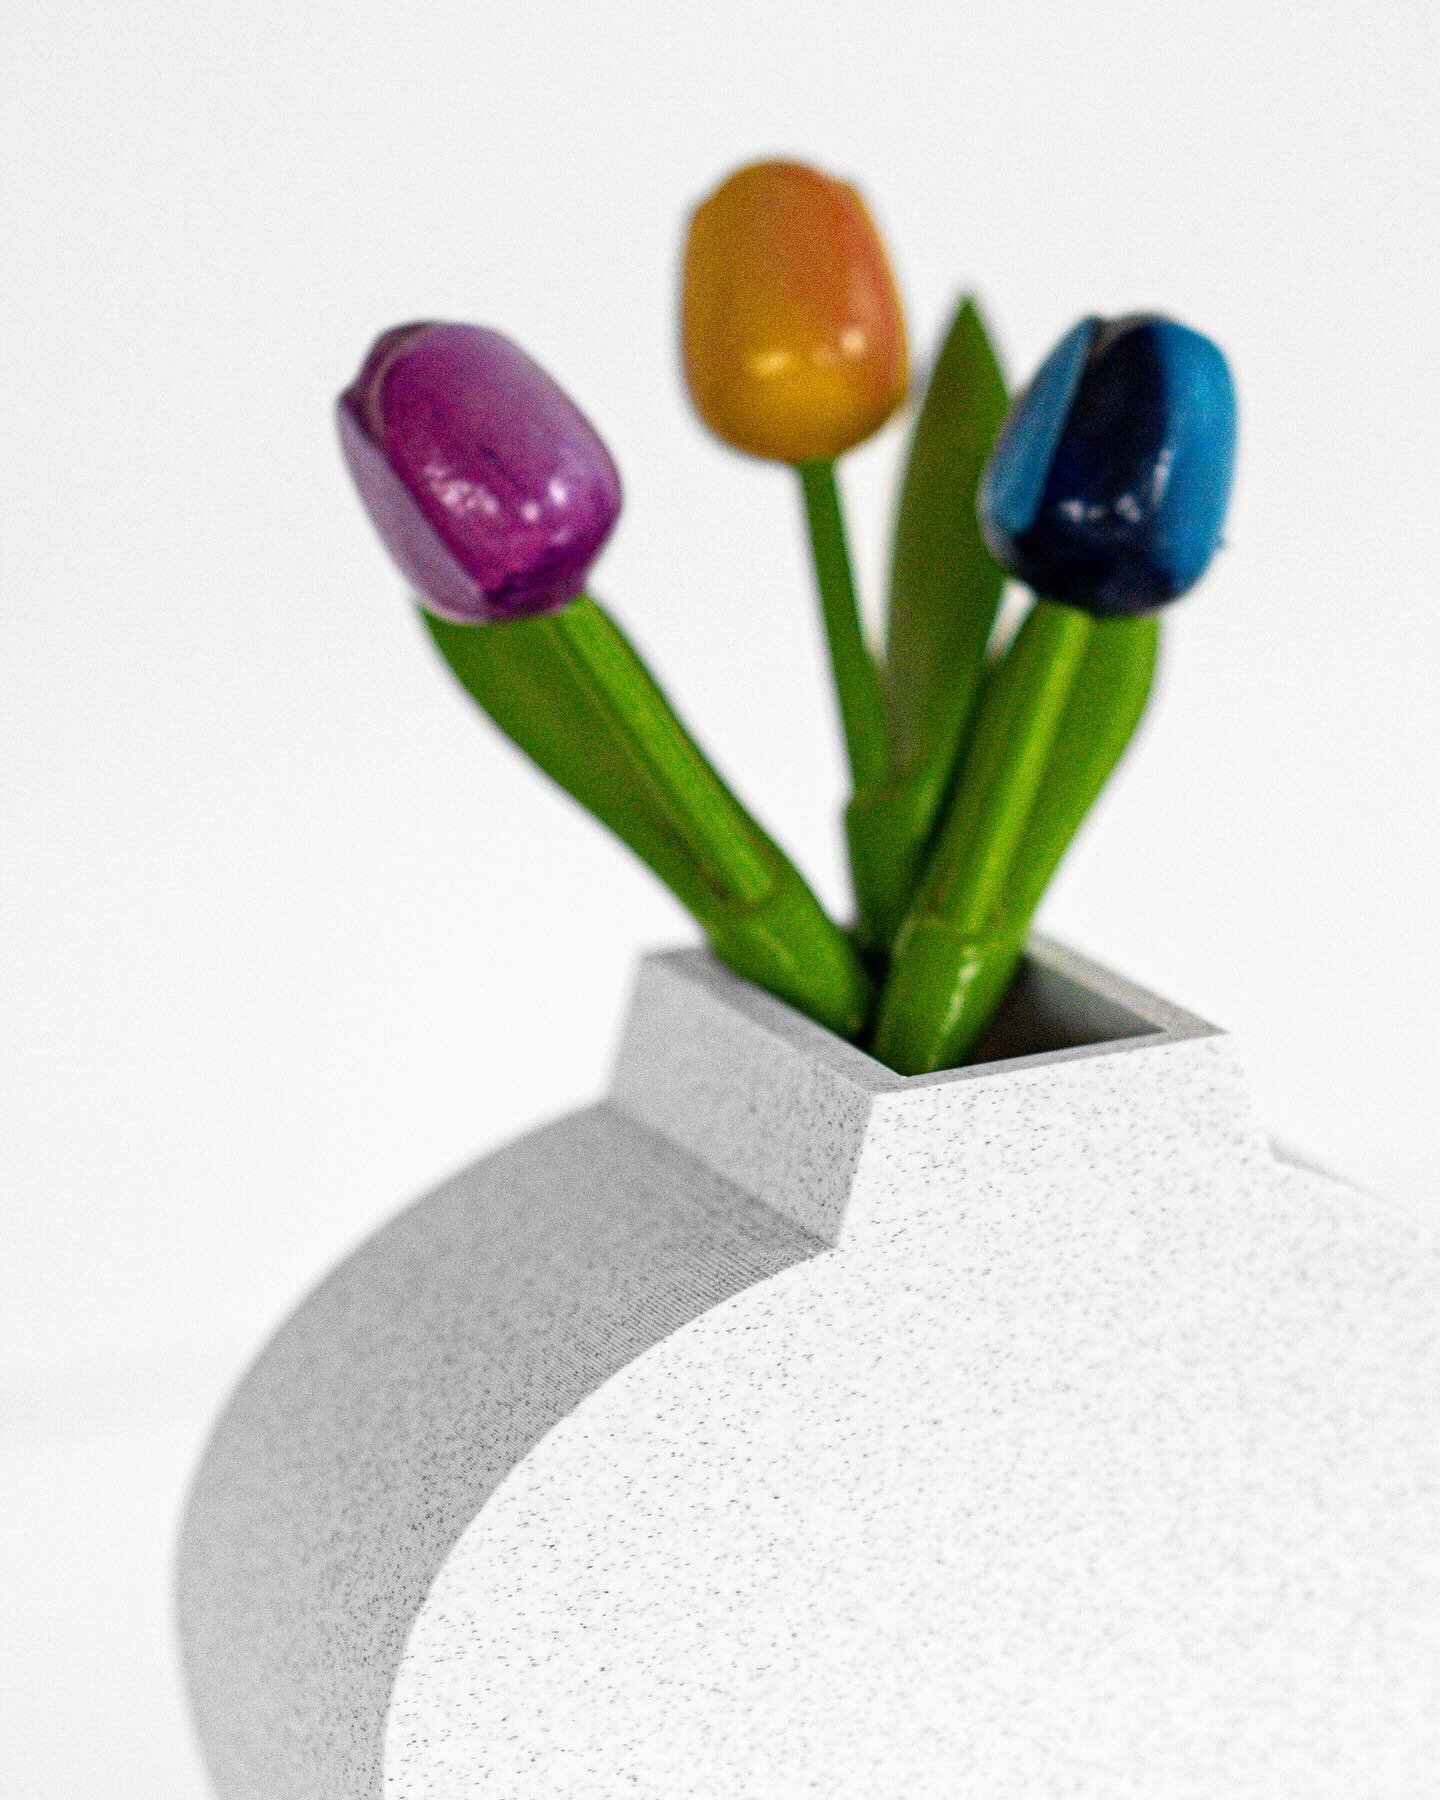 Benvenuta stampa 3D a filo! 🌈 

La primavera da Crispy sta arrivando in anticipo, sbocciano nuove possibilit&agrave; di personalizzazione nel nostro lab 🌷 (e questa non &egrave; l&rsquo;unica 😉)

👩&zwj;🔧 Abbiamo sentito la vostra curiosit&agrave